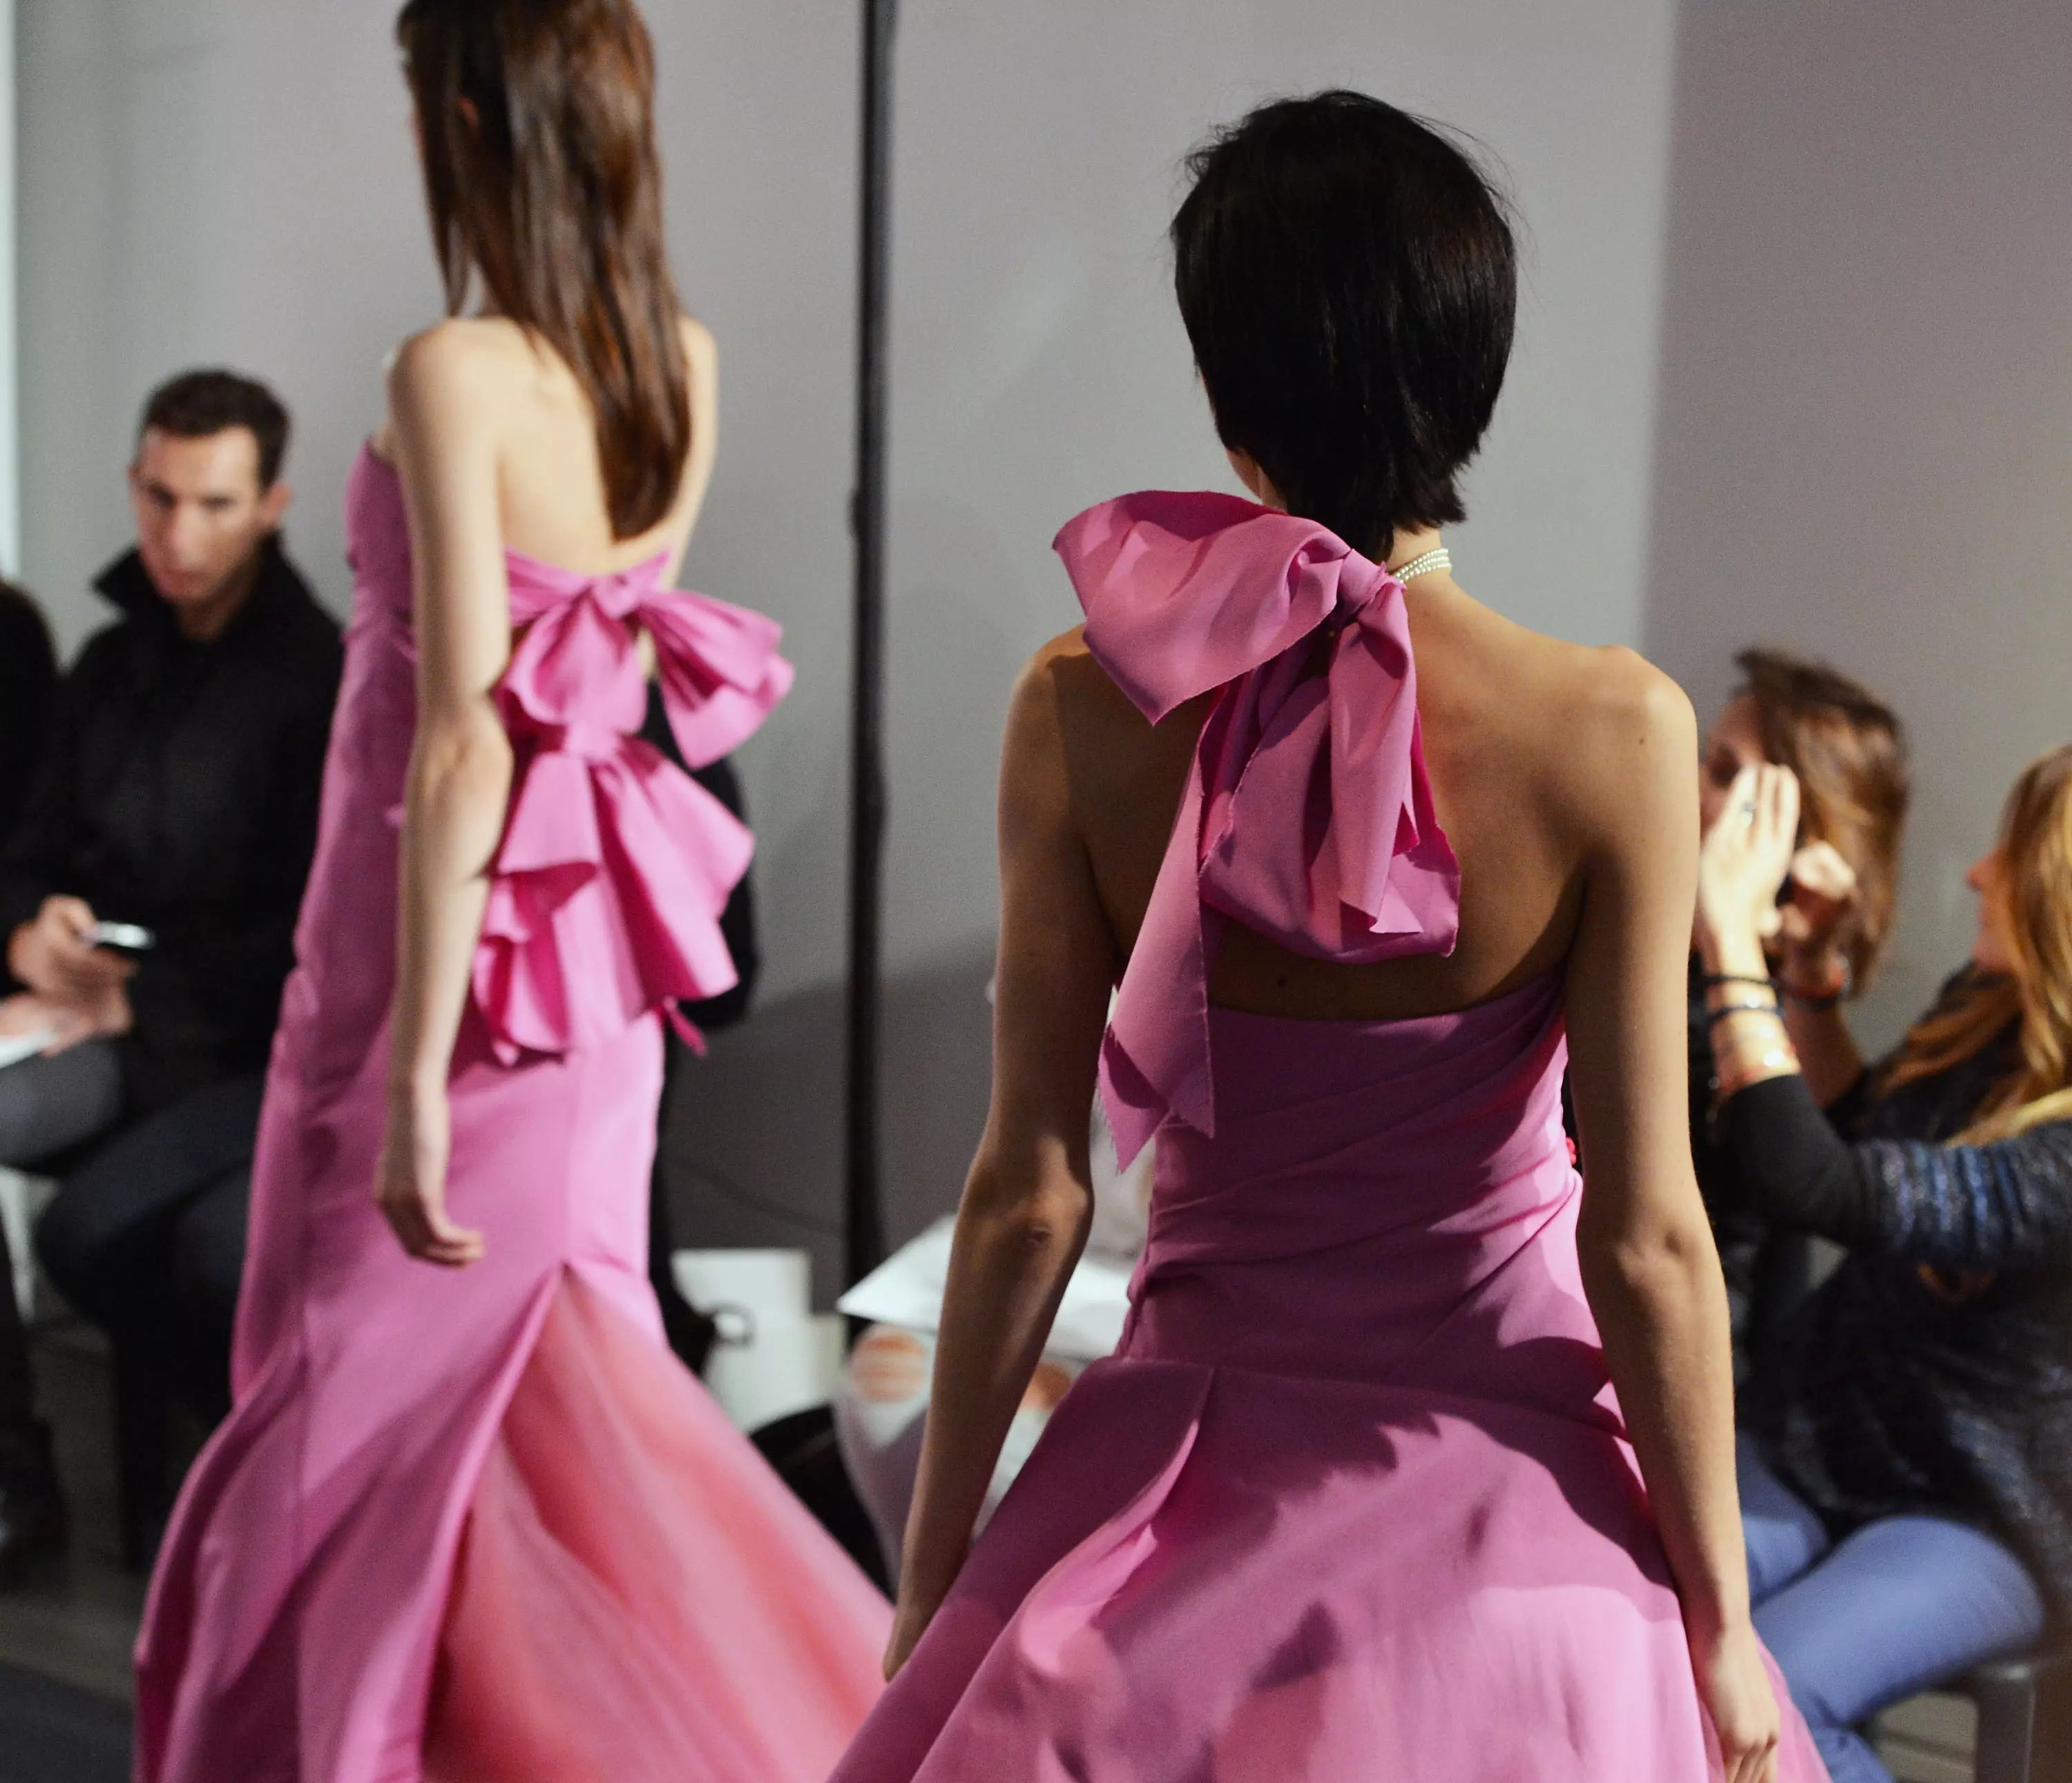 תצוגת שמלות כלה של ורה וונג לסתיו 2014 בניו יורק, אוקטובר 2013